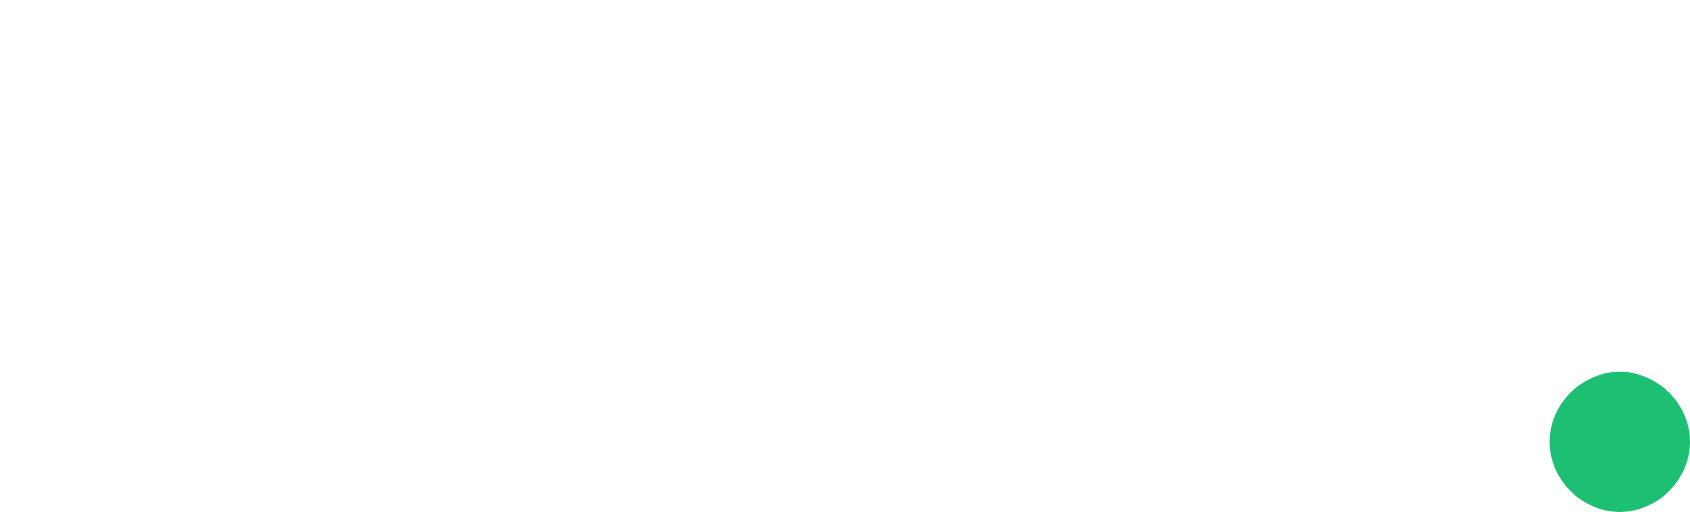 Fiverr logo grand pour les fonds sombres (PNG transparent)